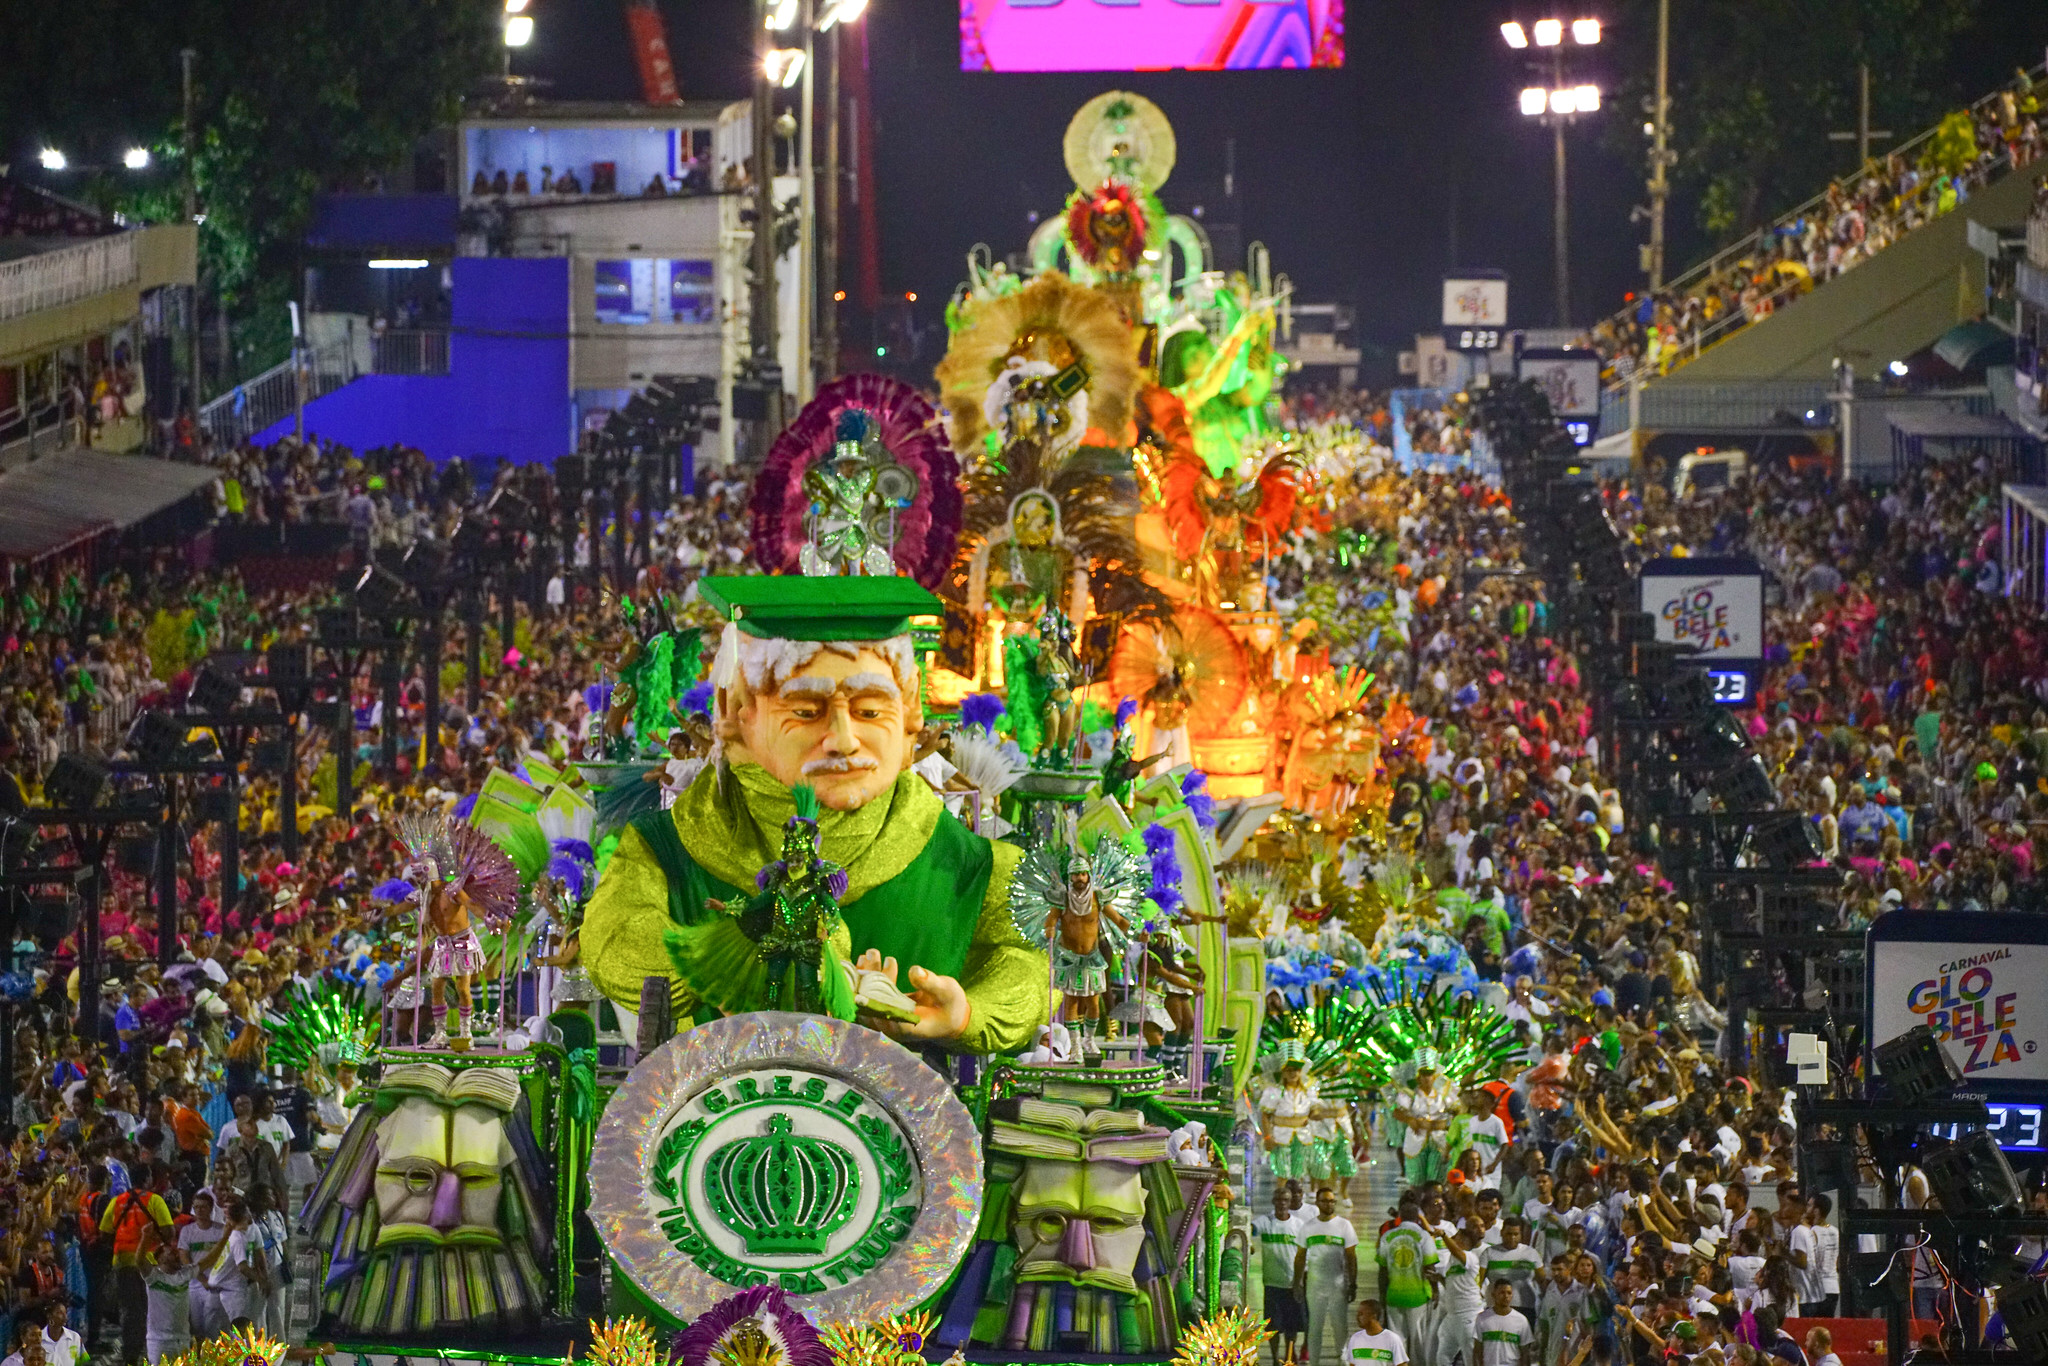 Série A e grupos da Intendente Magalhães mudam de nome para o Carnaval 2021